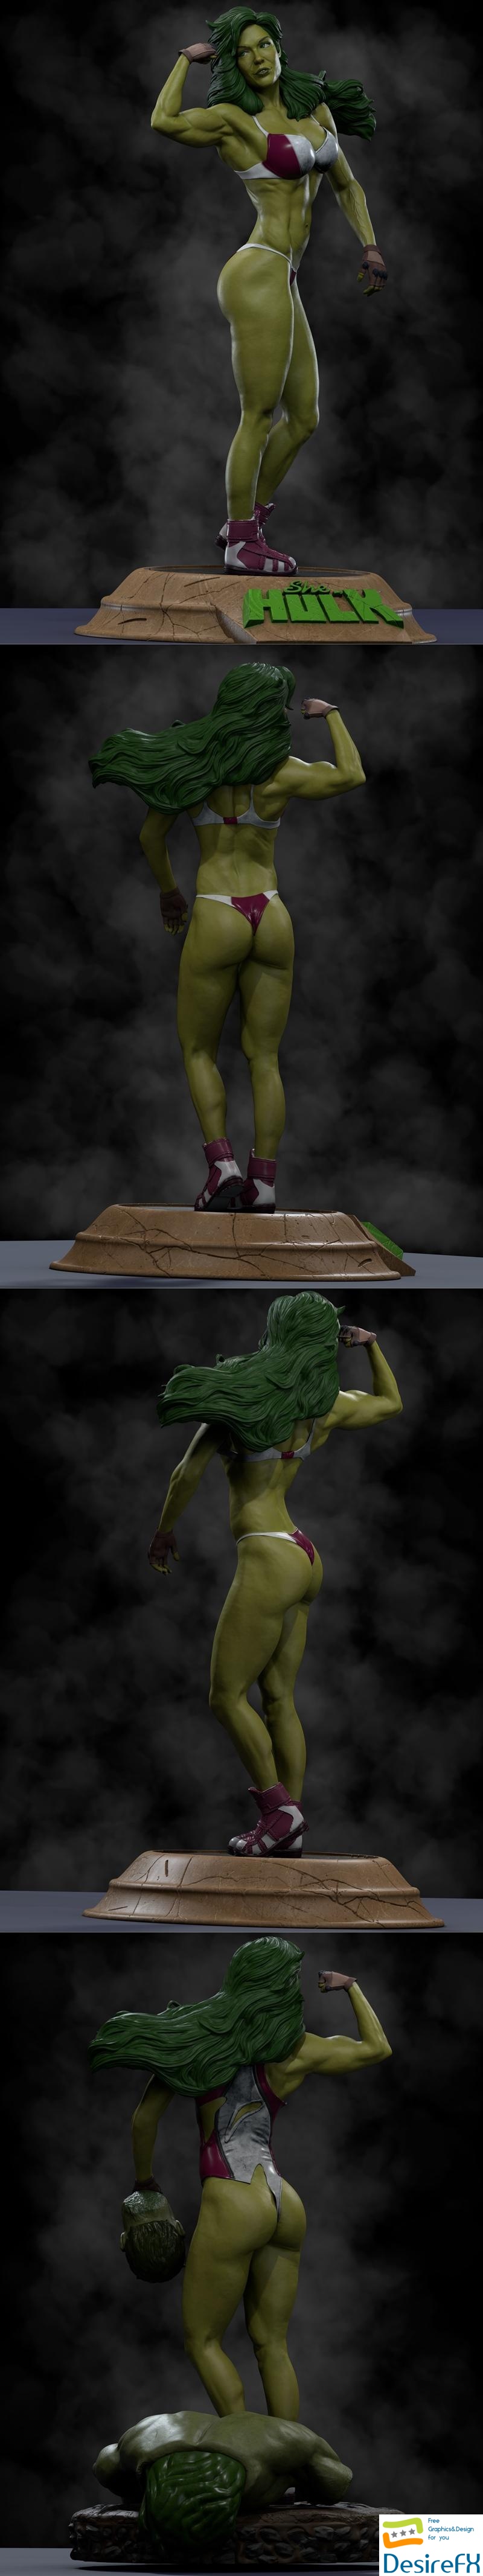 Ca 3d Studios - She-Hulk Model 1-2-3 3D Print